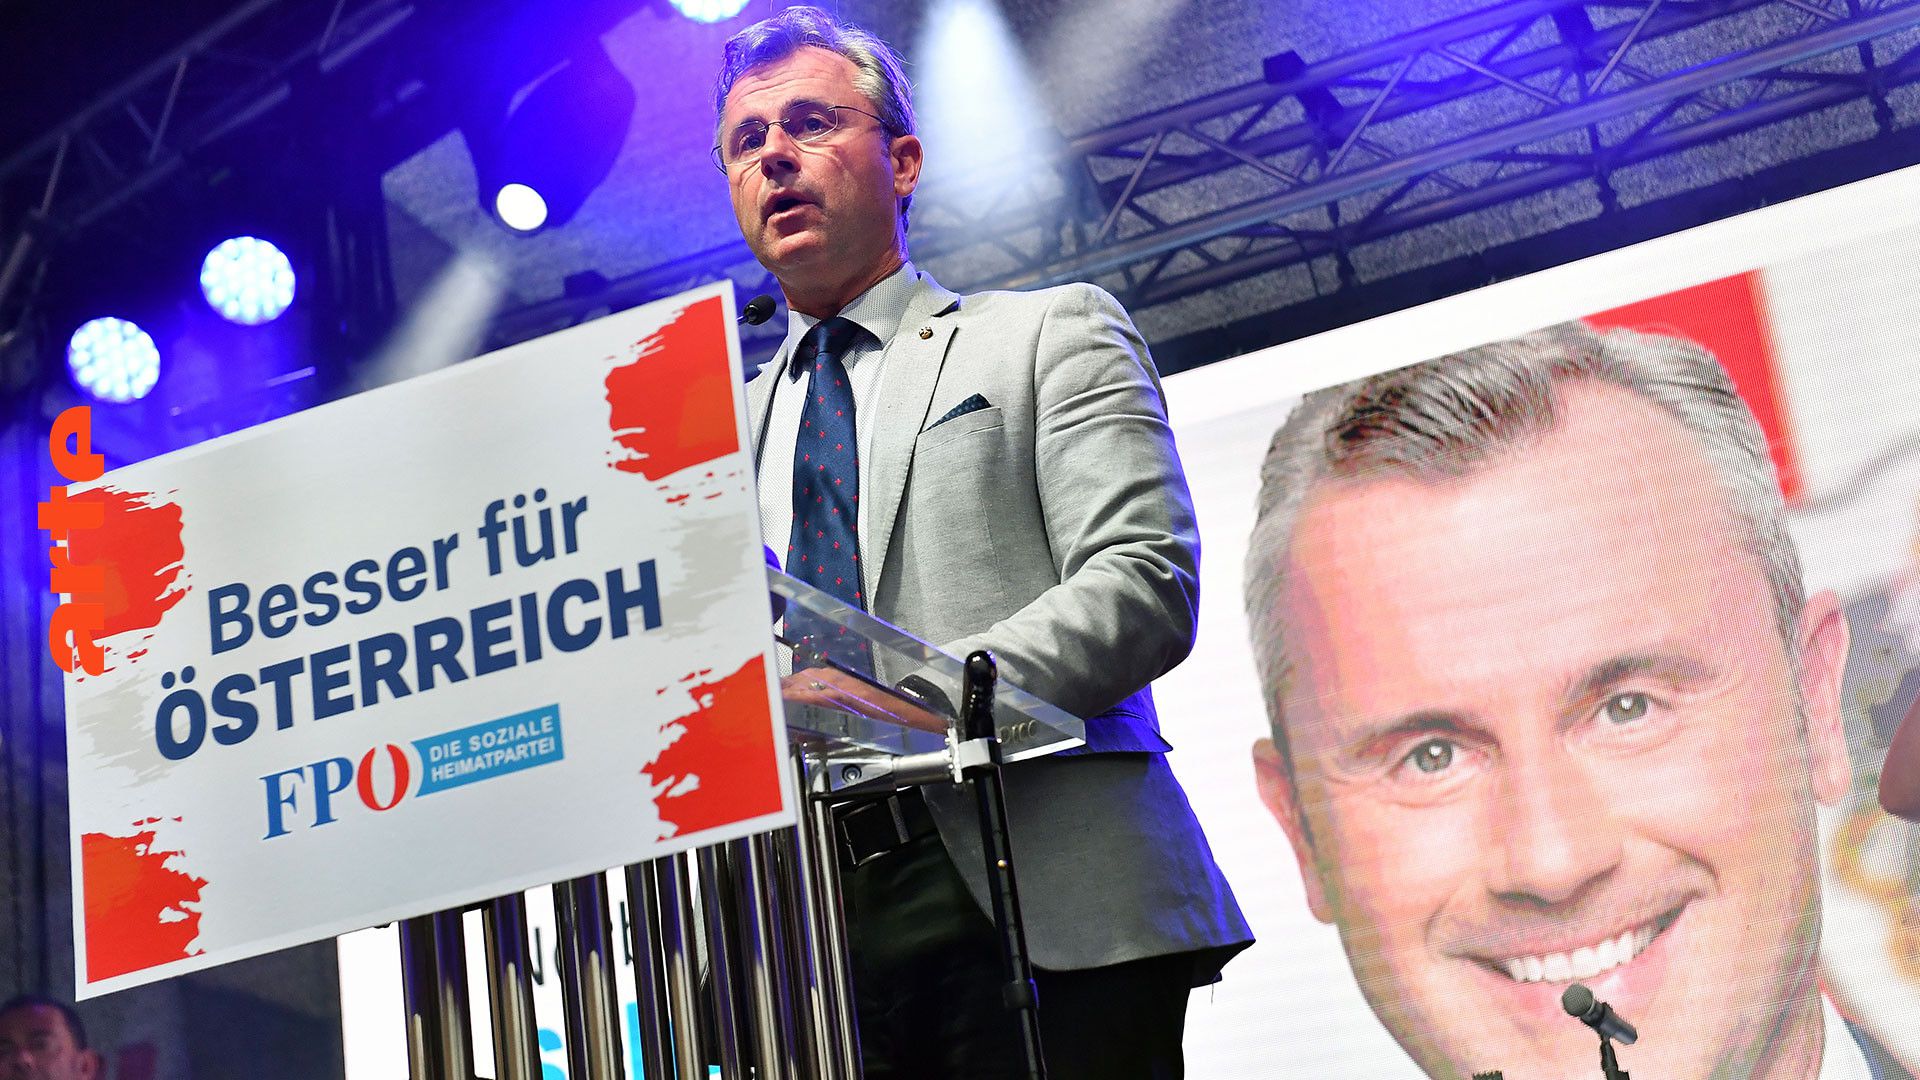 Österreich: Die FPÖ auf Wählerfang | ARTE